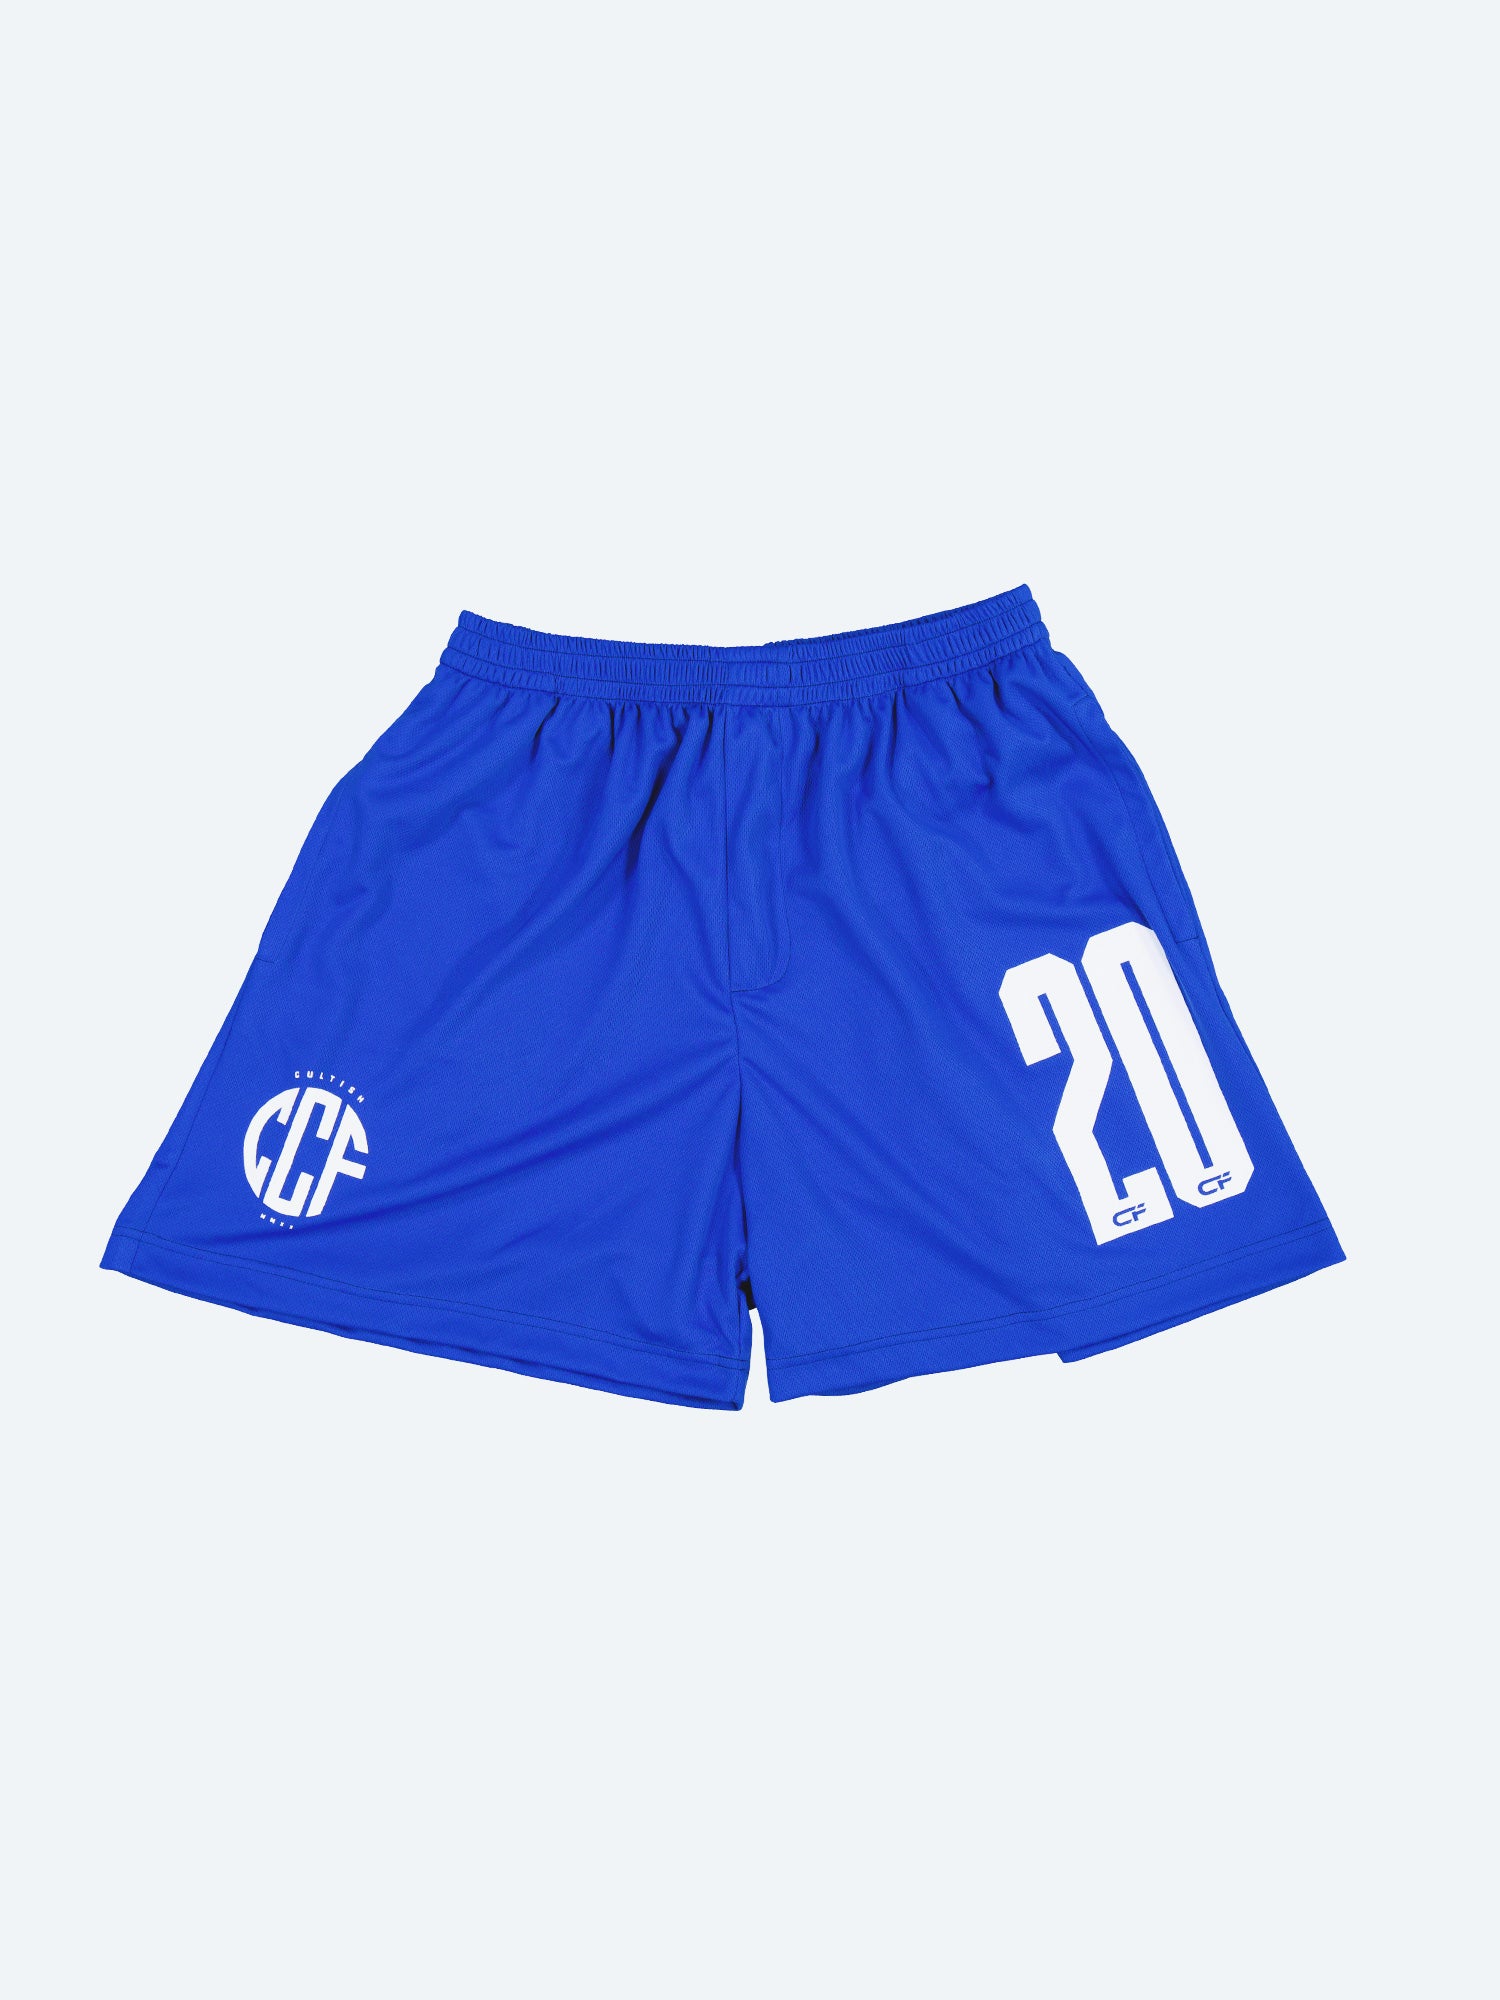 CCF Home Shorts / Royal